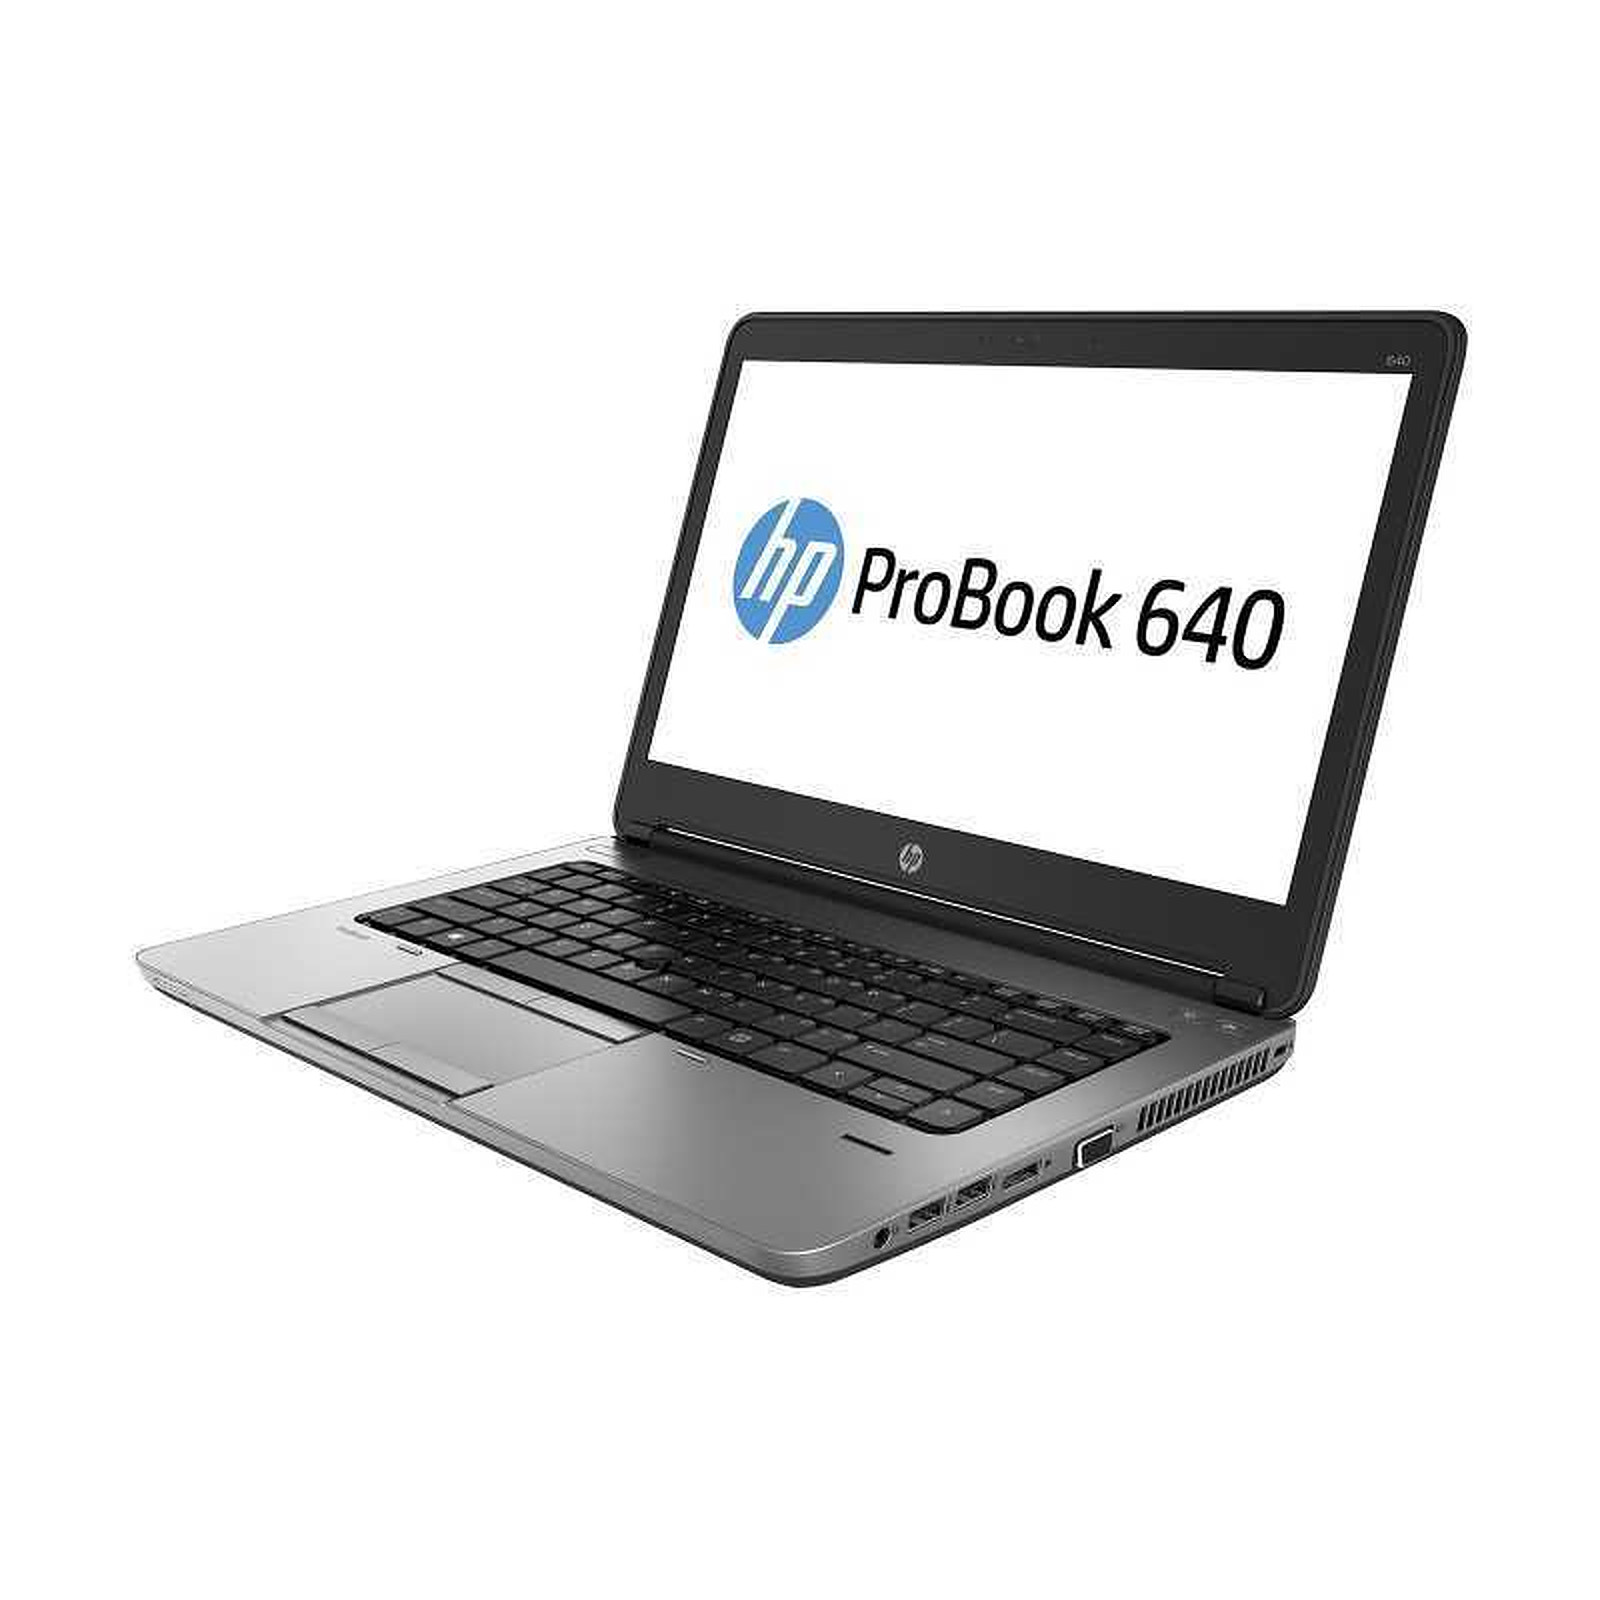 HP ProBook 640 G1 (D9R53AV-B-4287) (D9R53AV-B) · Reconditionne - PC portable reconditionne HP